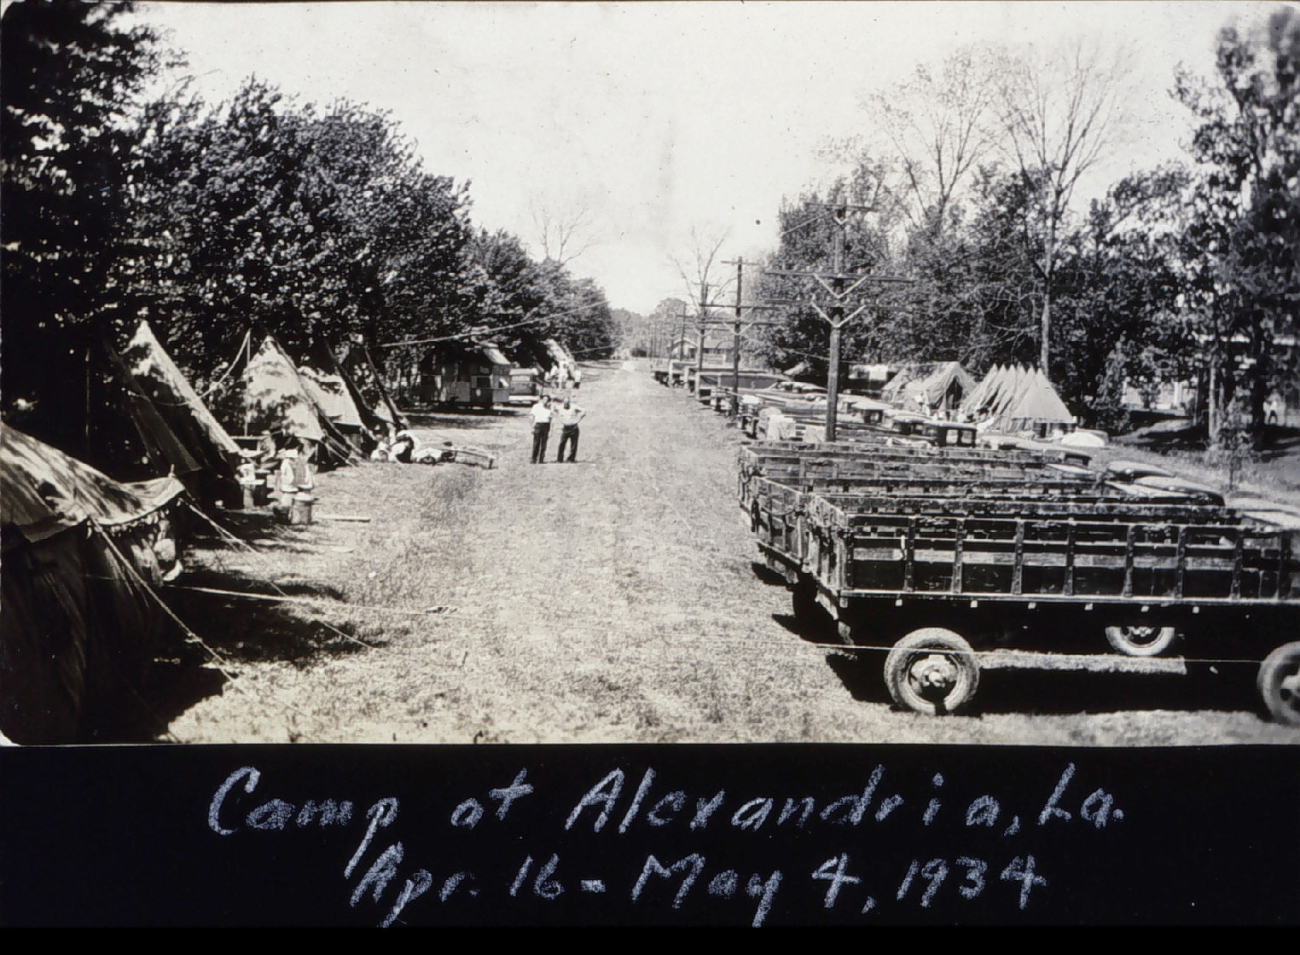 Camp at Alexandria, Louisiana